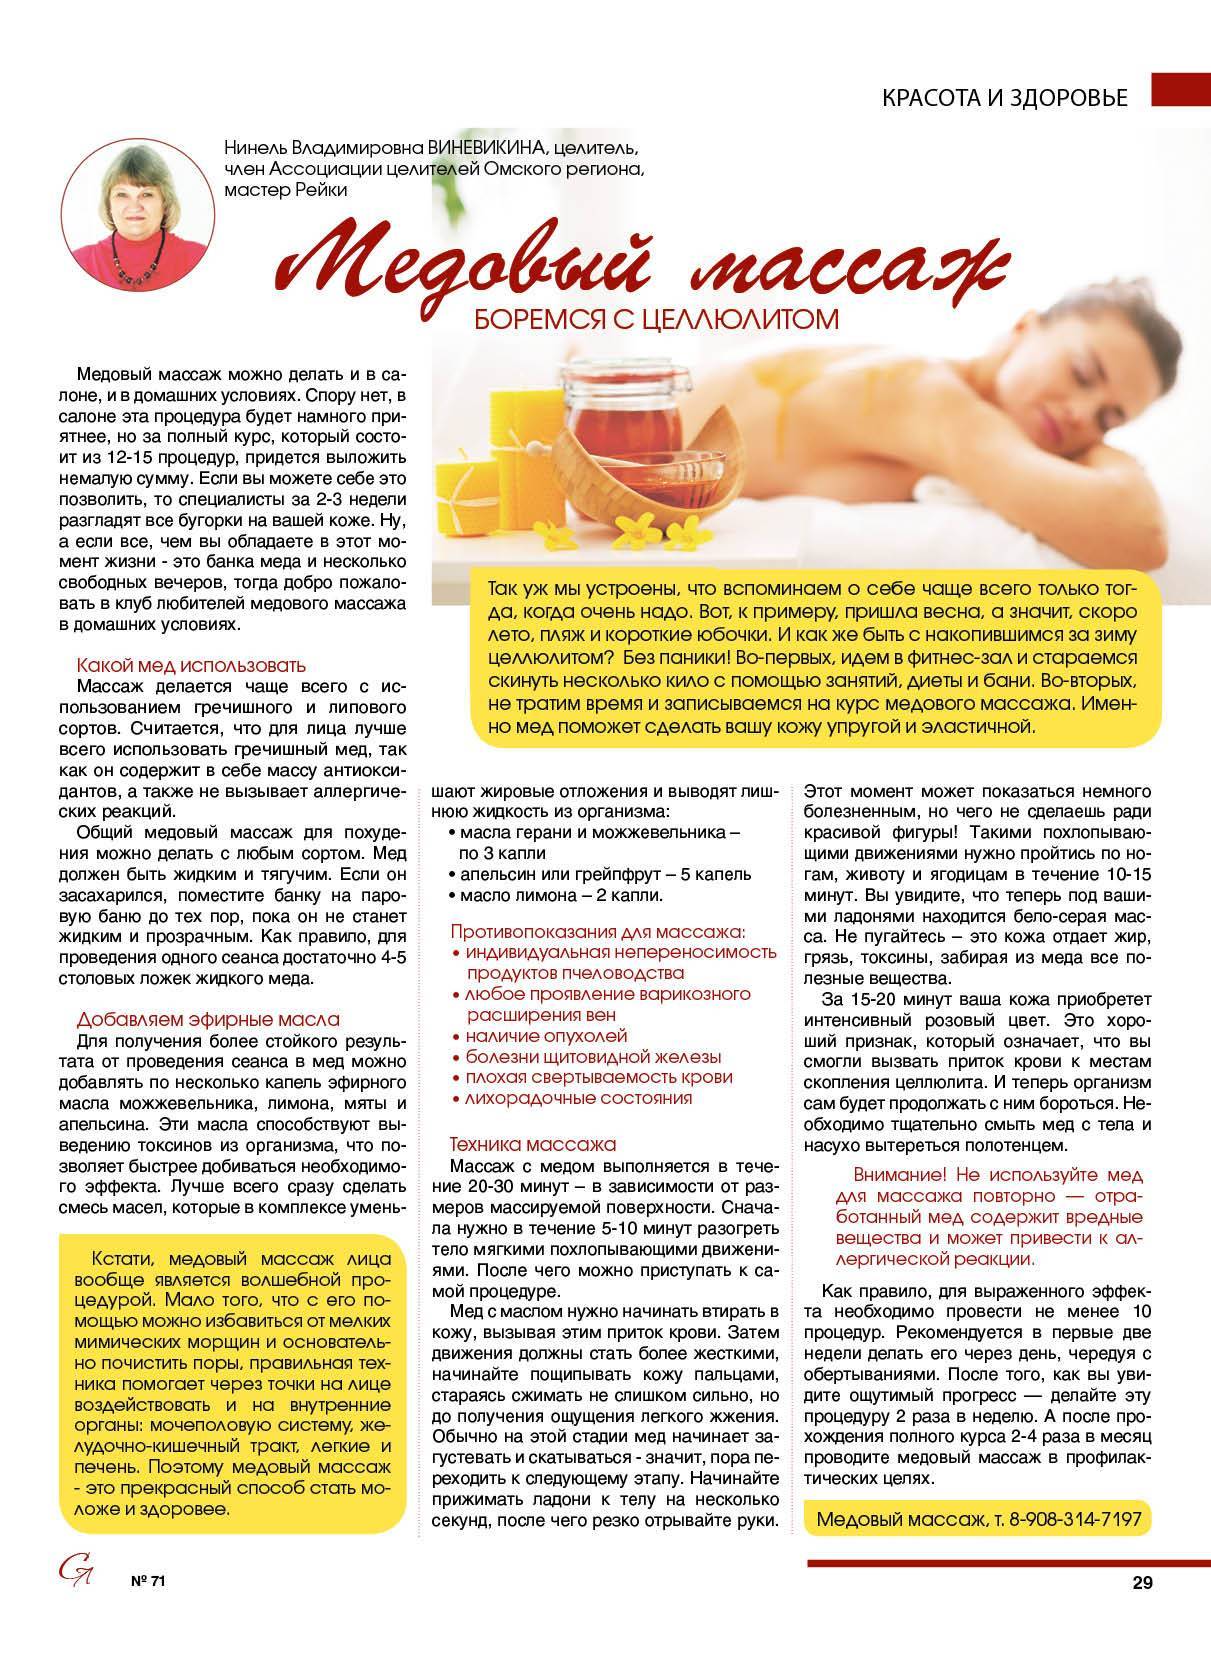 Медовый массаж антицеллюлитный: польза, противопоказания. эффект от массажа с медом